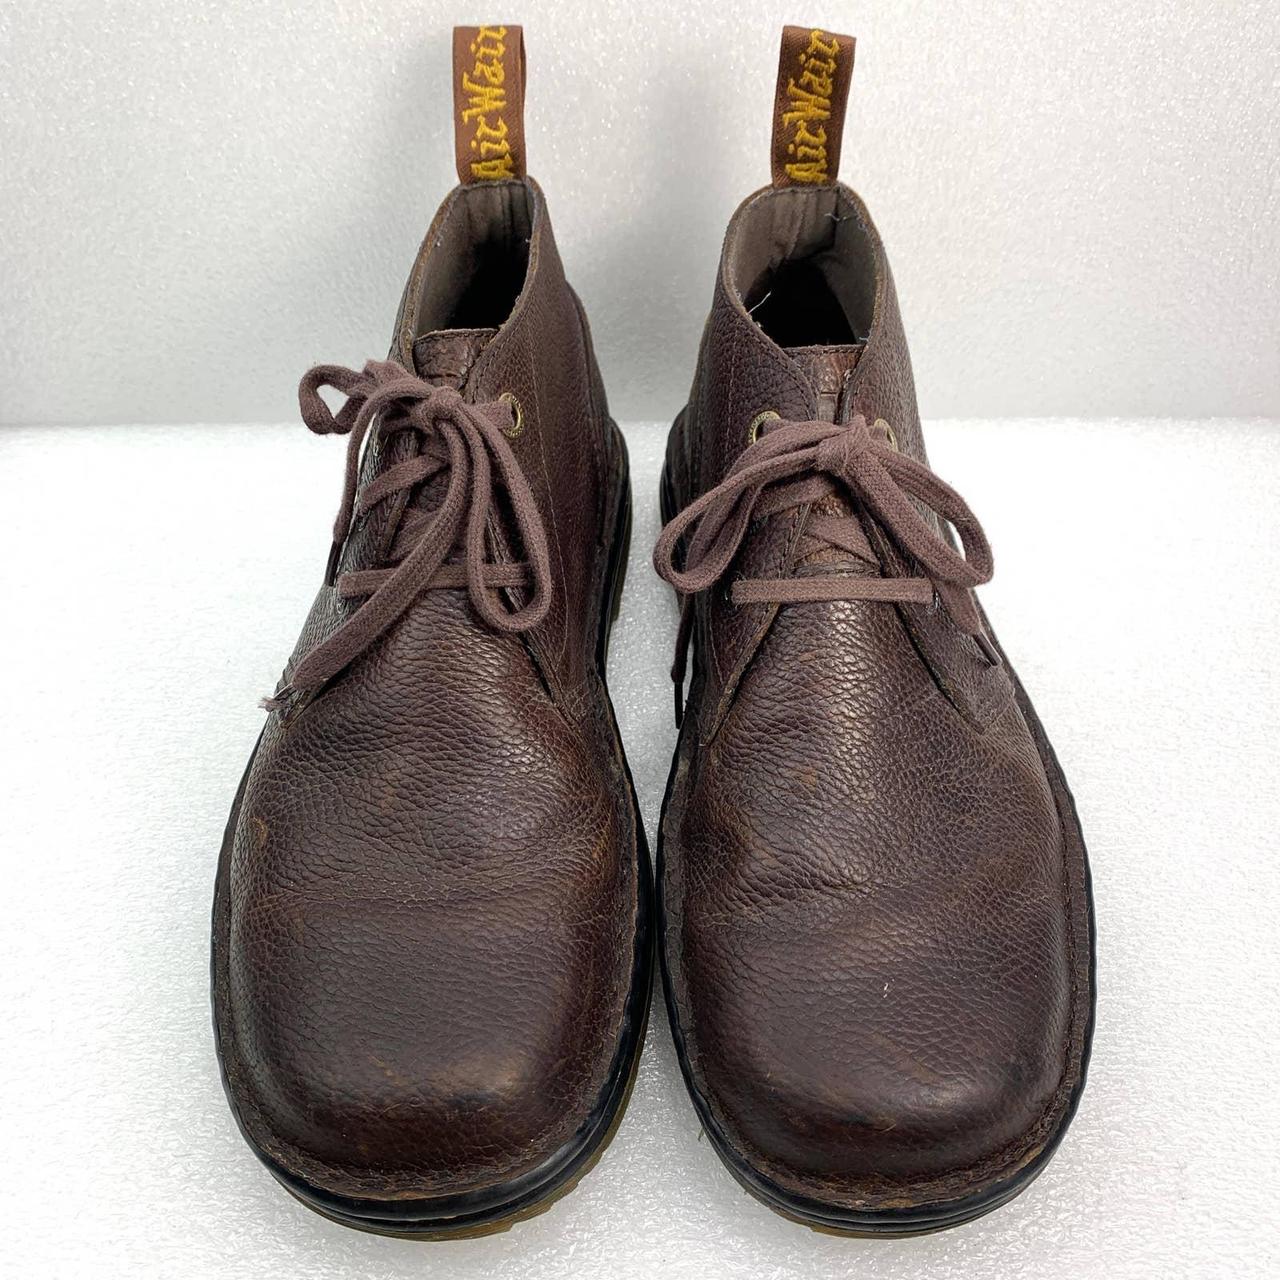 Dr. Martens Sussex Chukka Boot in Dark Brown Size... - Depop